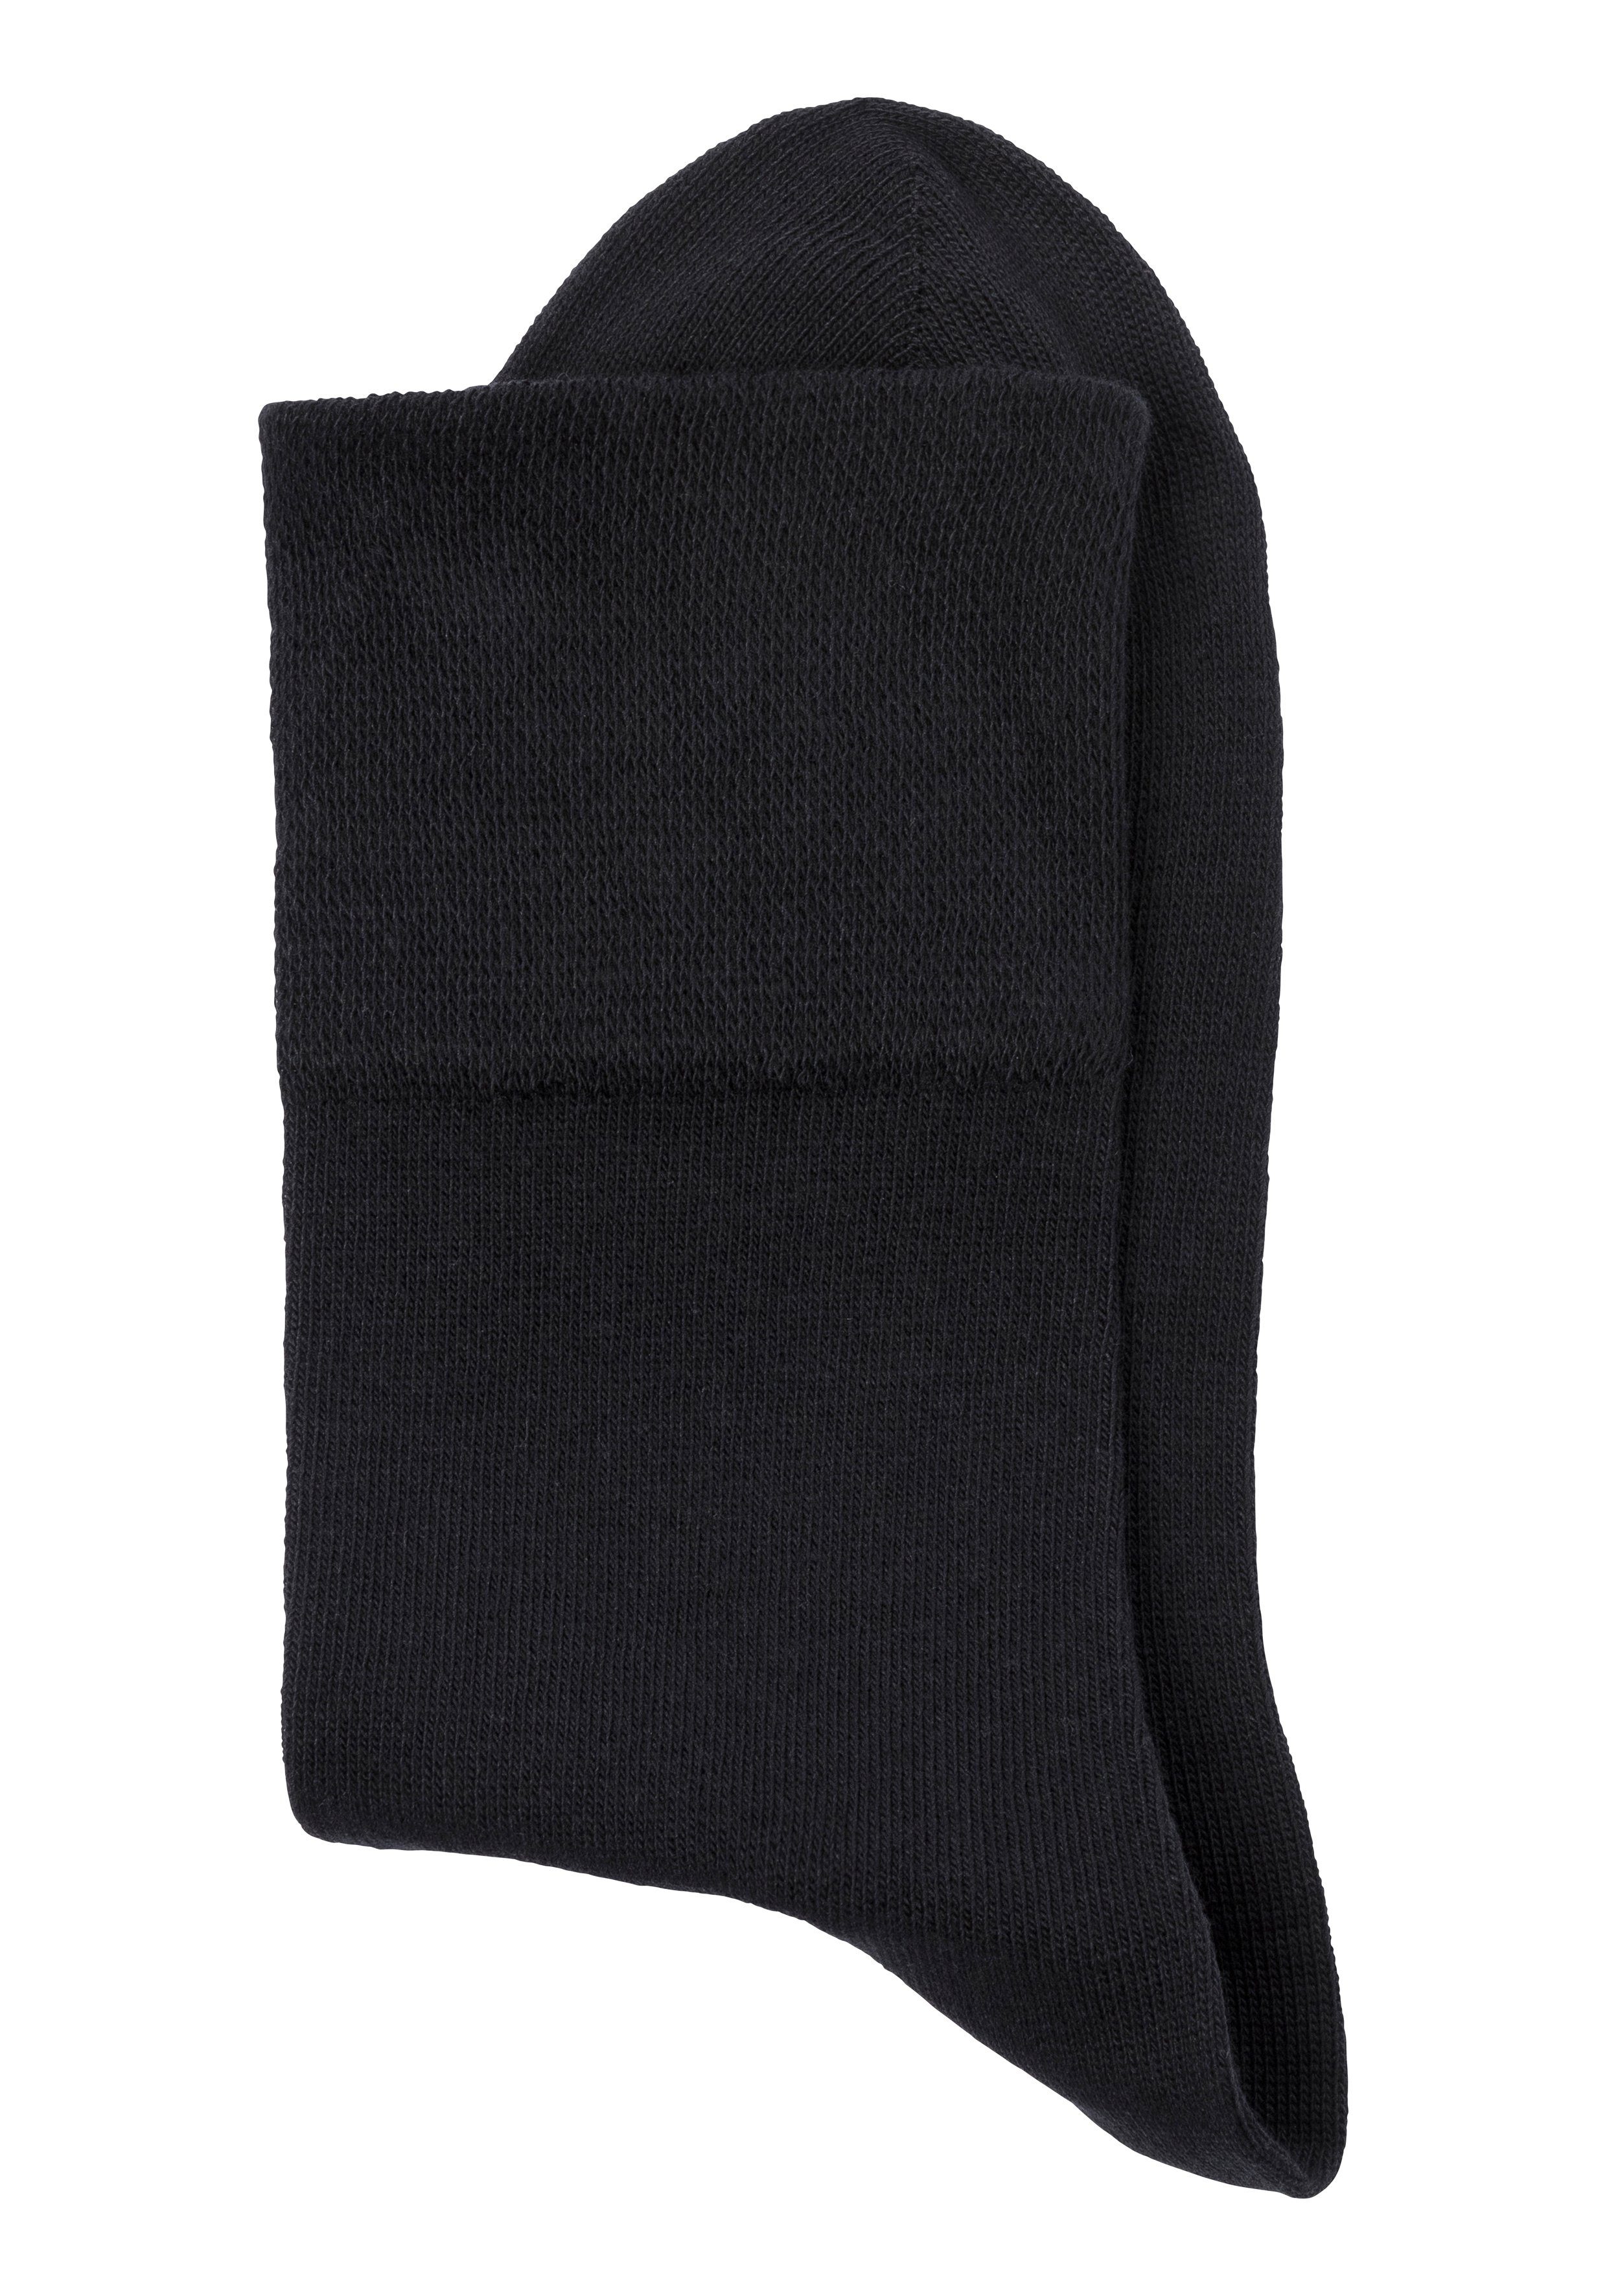 Socken Diabetiker 6x für schwarz (Set, auch geeignet H.I.S mit 6-Paar) Komfortbund